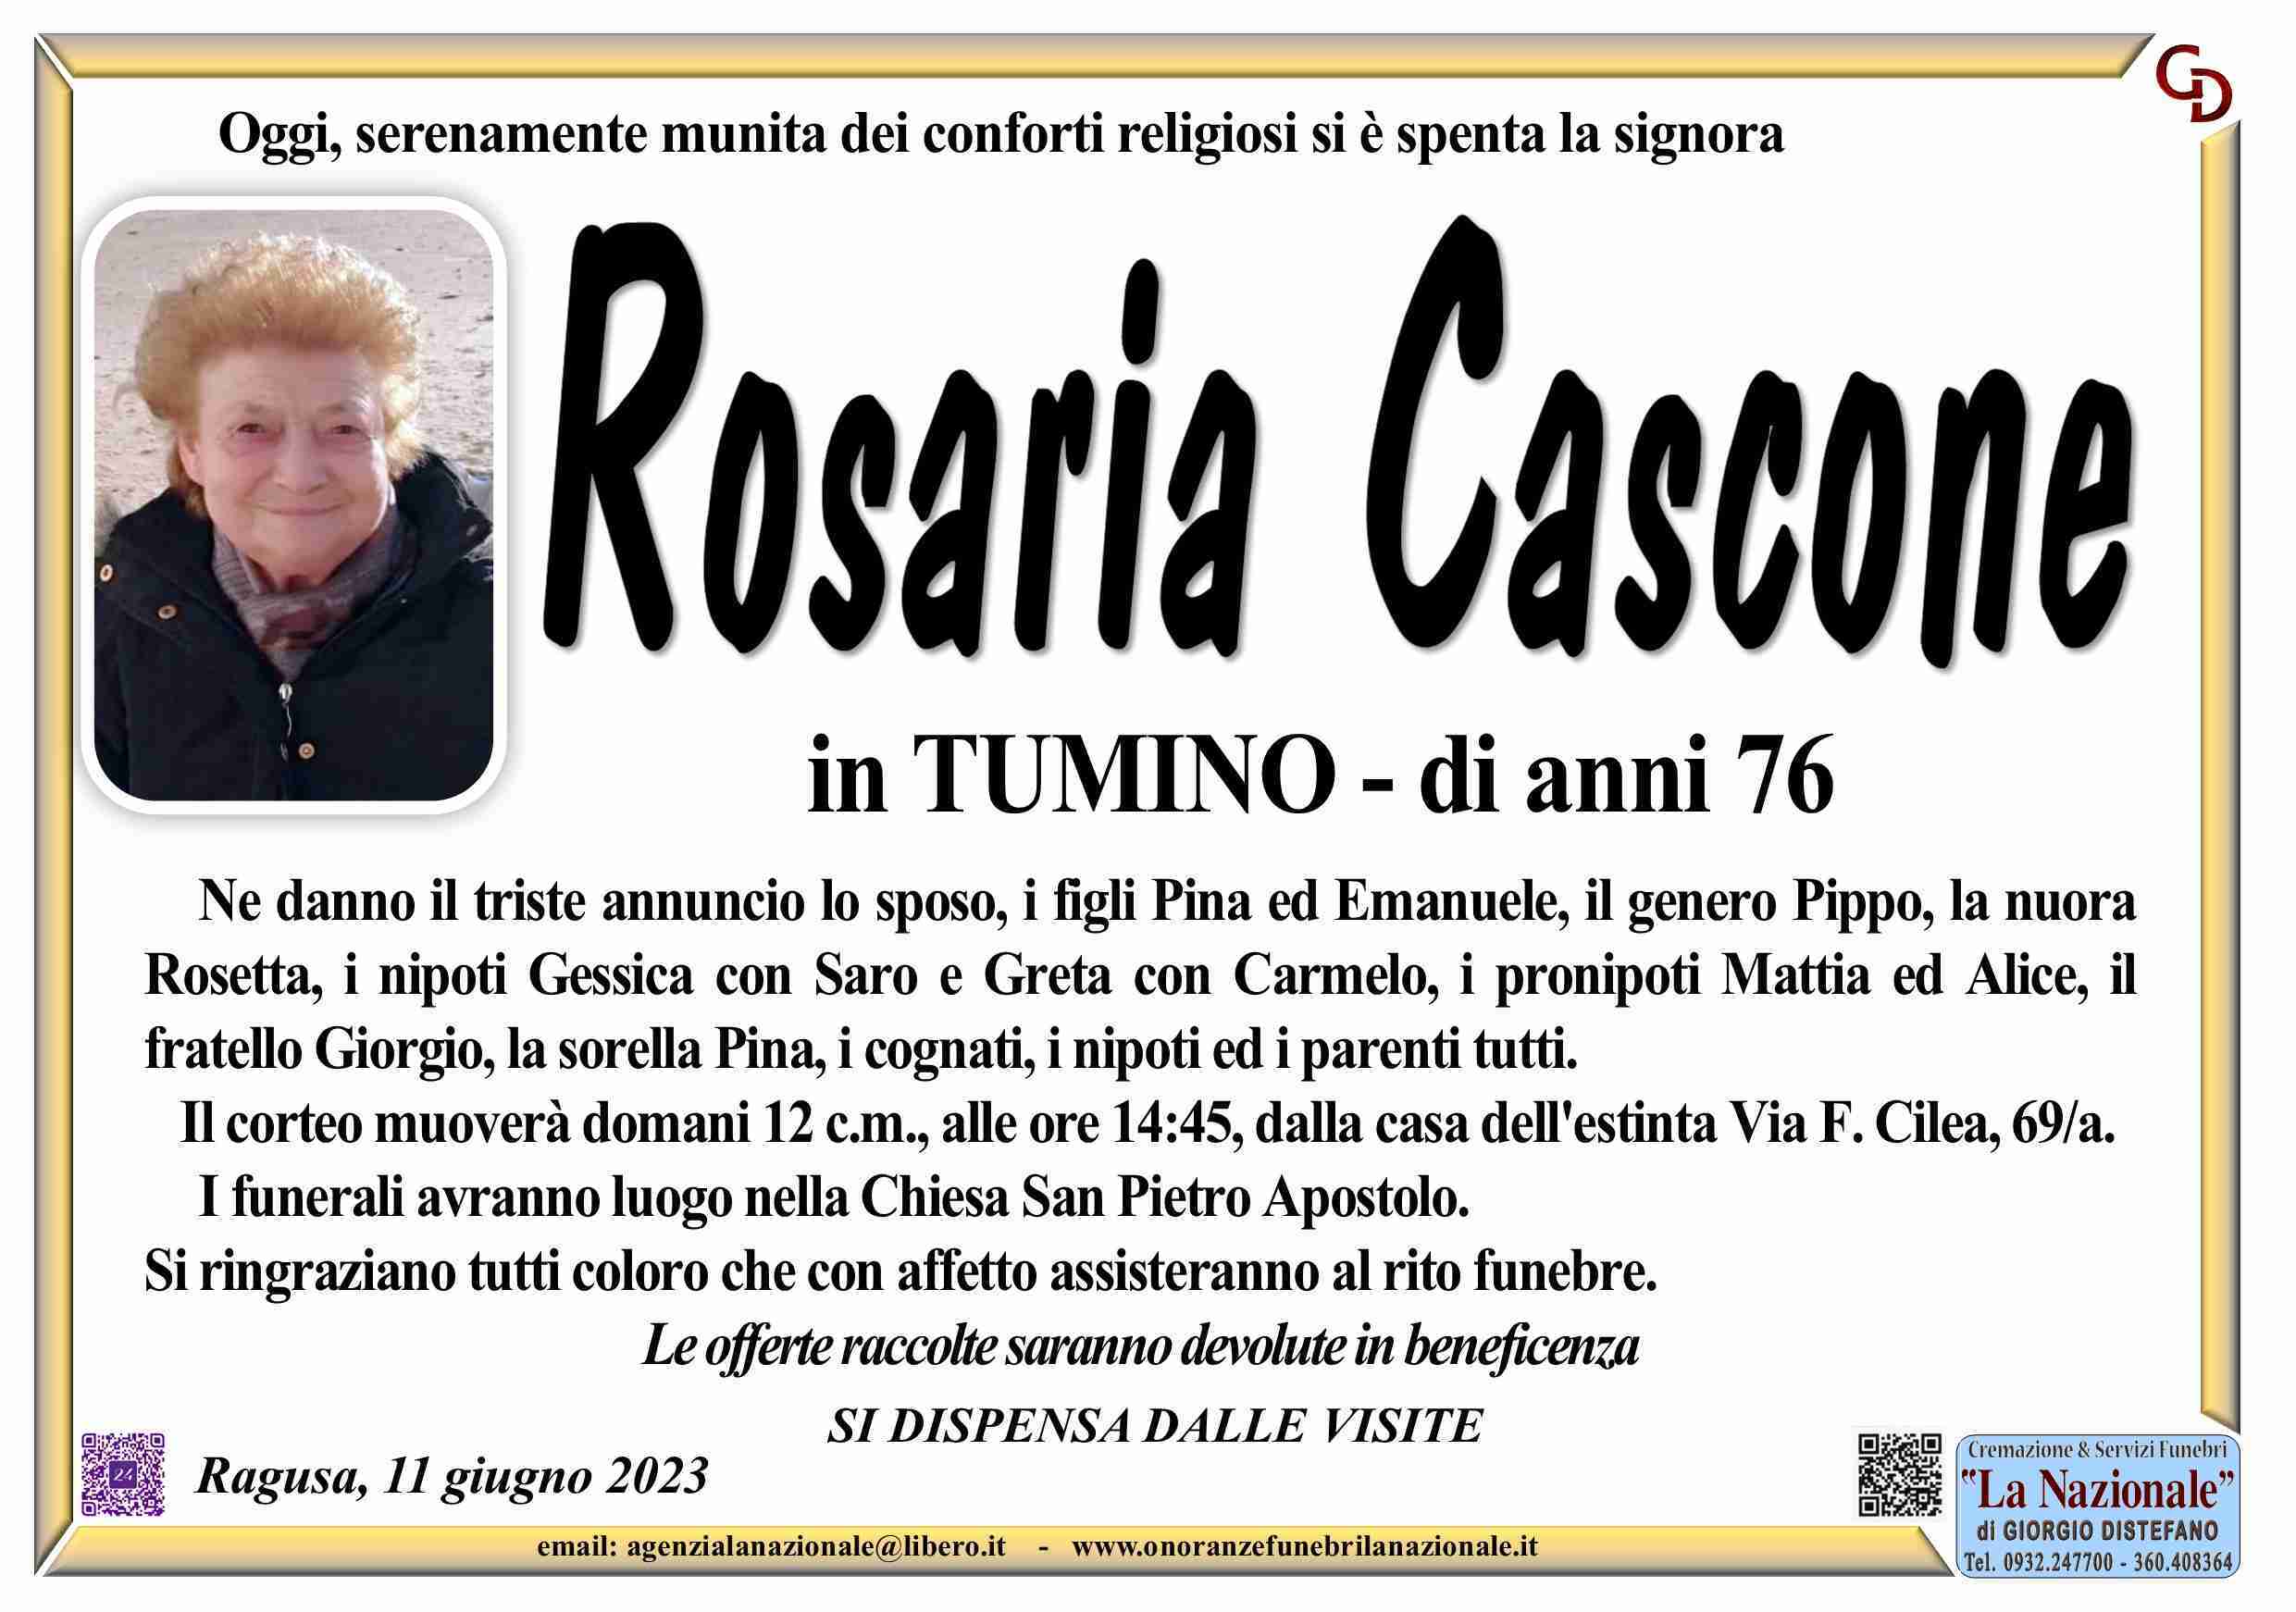 Rosaria Cascone